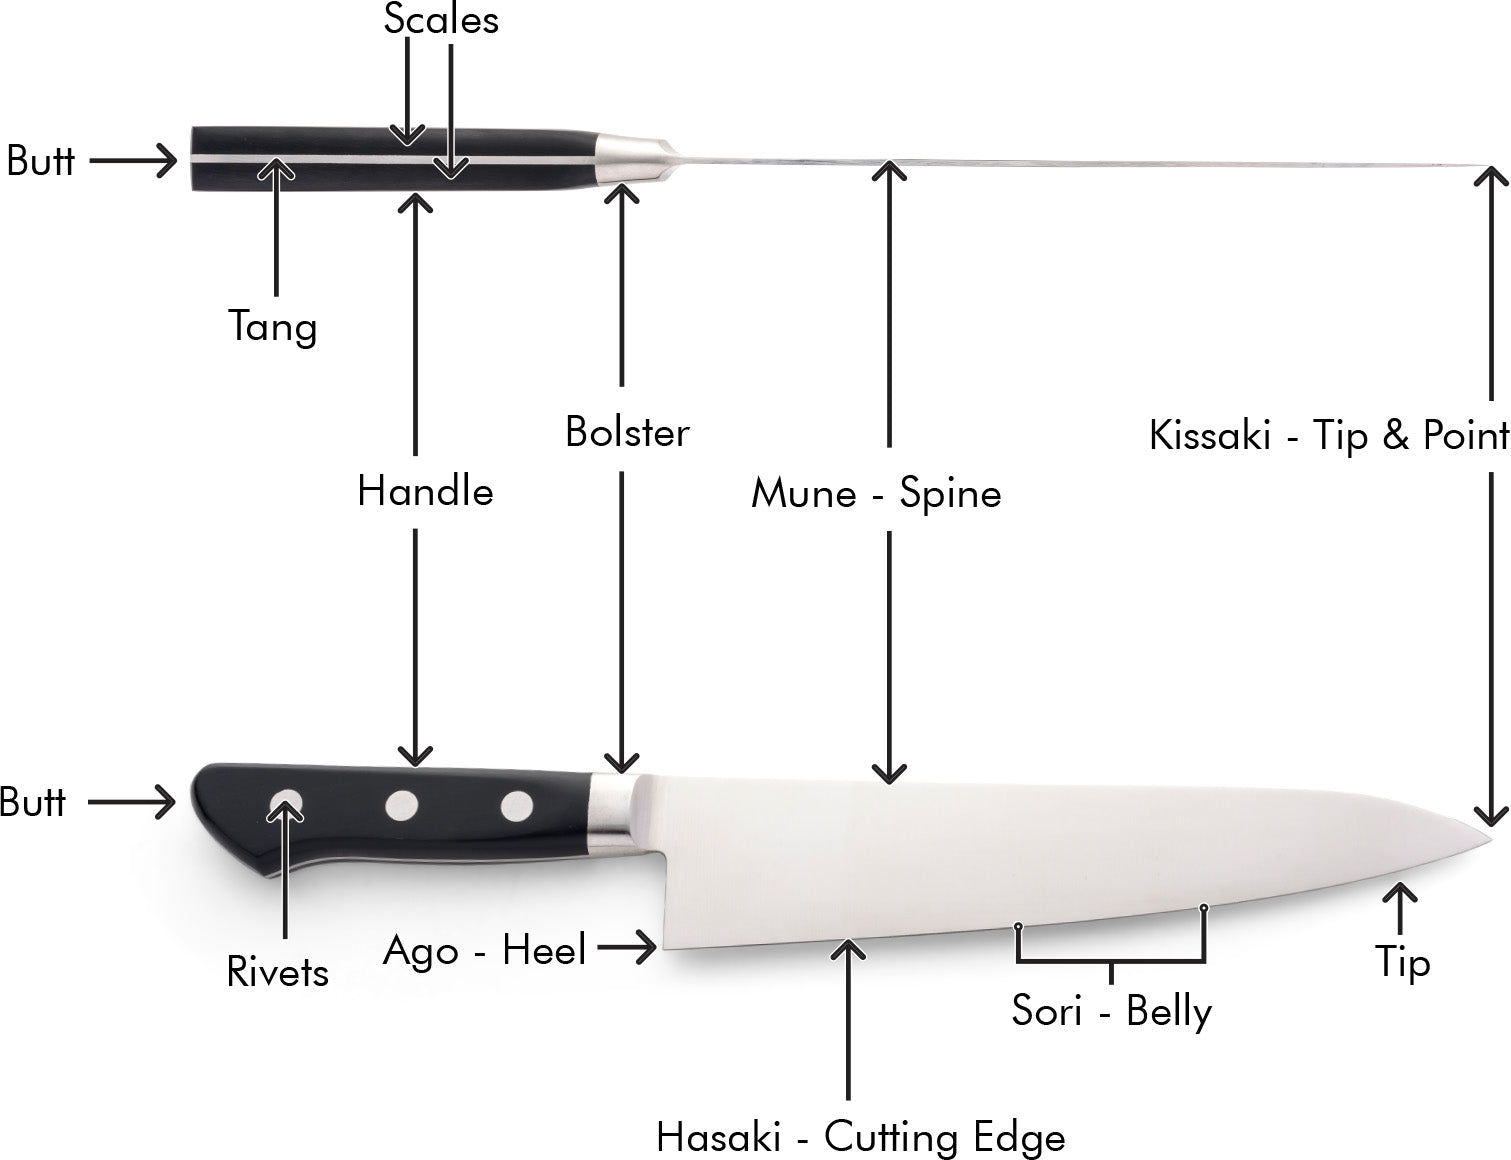 Japanese Double-Bevel Western Handle Knife Anatomy Diagram